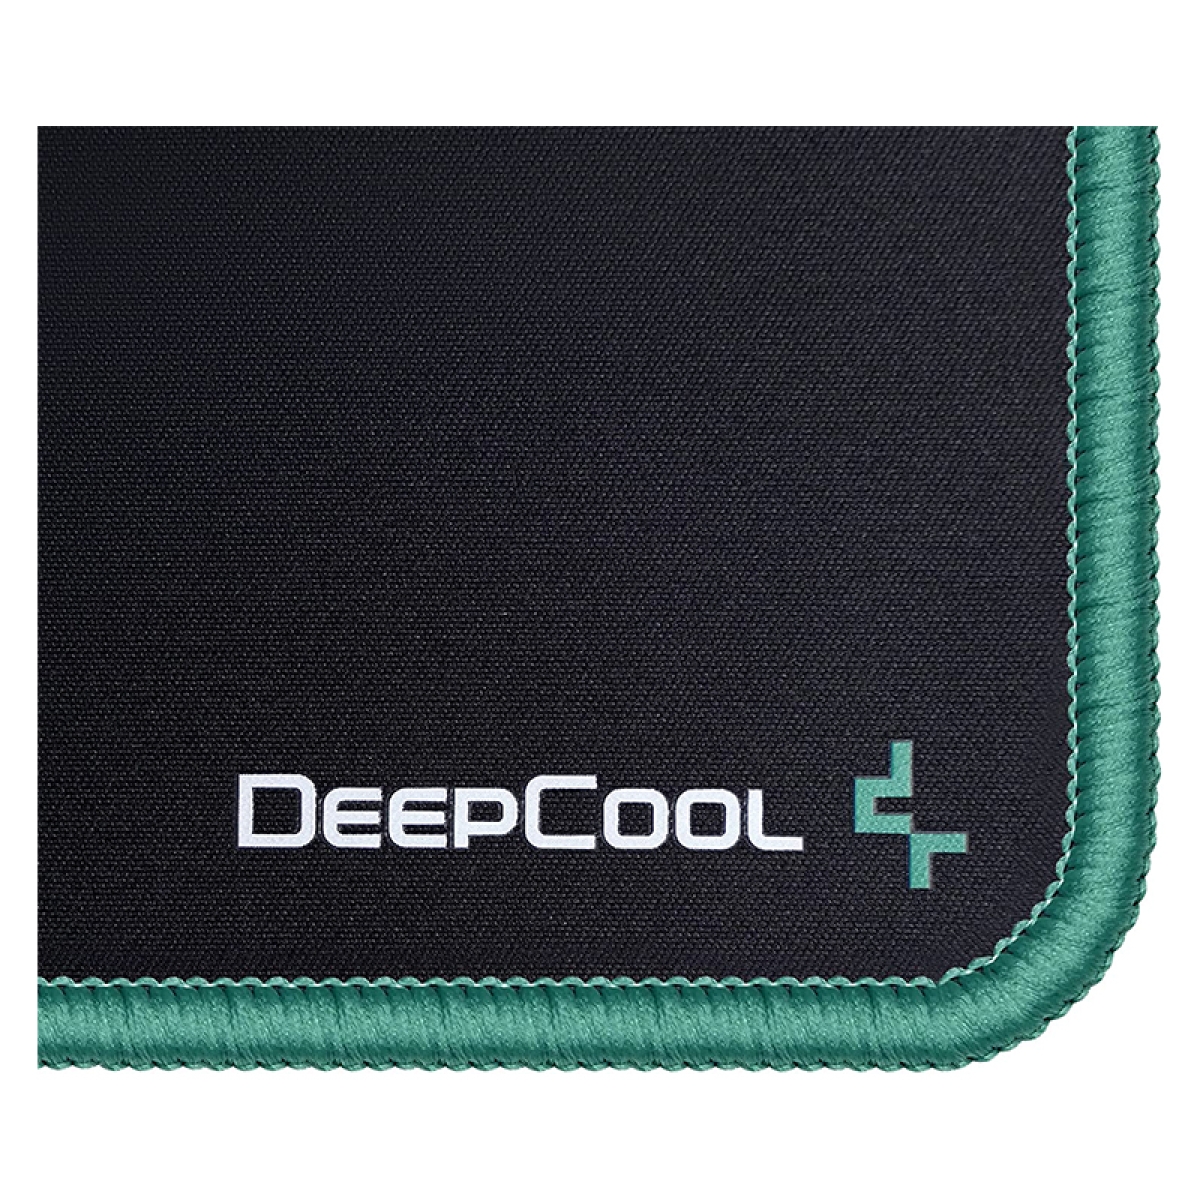 ماوس پد گیمینگ دیپ کول مدل DEEPCOOL GM800